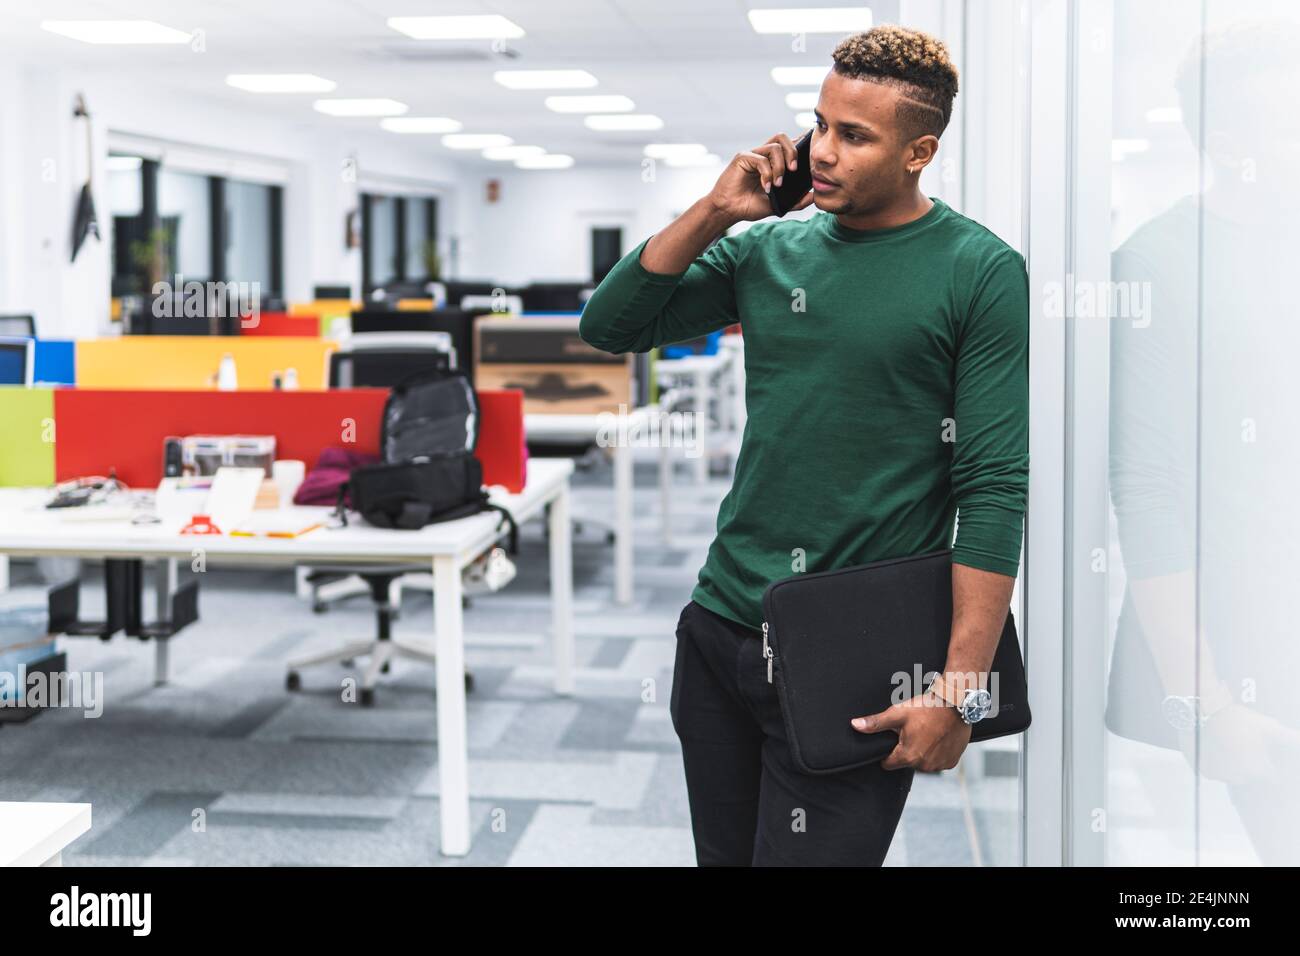 Männlicher Profi mit Aktendokument auf Telefonanruf stützend auf Glas am Arbeitsplatz Stockfoto